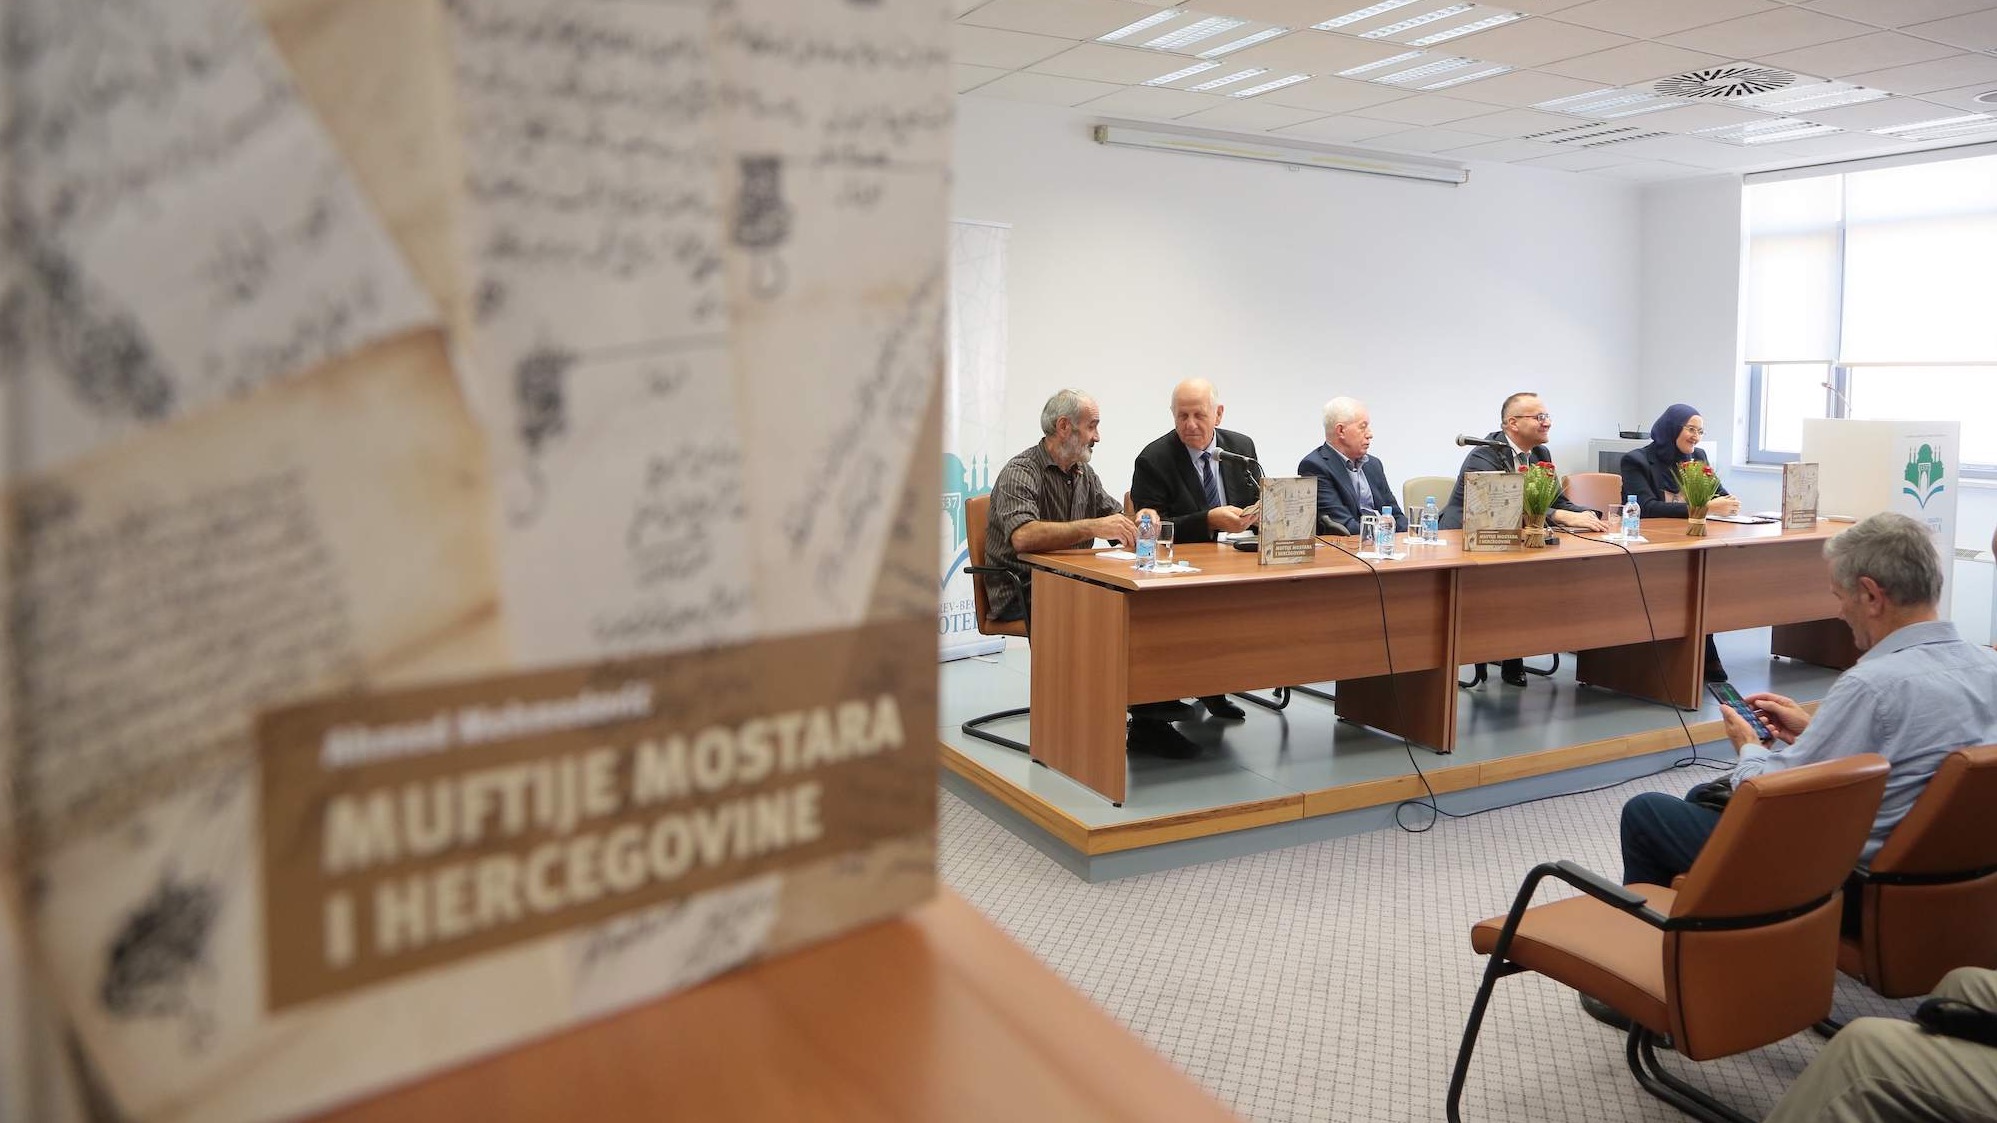 U Sarajevu predstavljena monografija "Muftije Mostara i Hercegovine" (VIDEO)